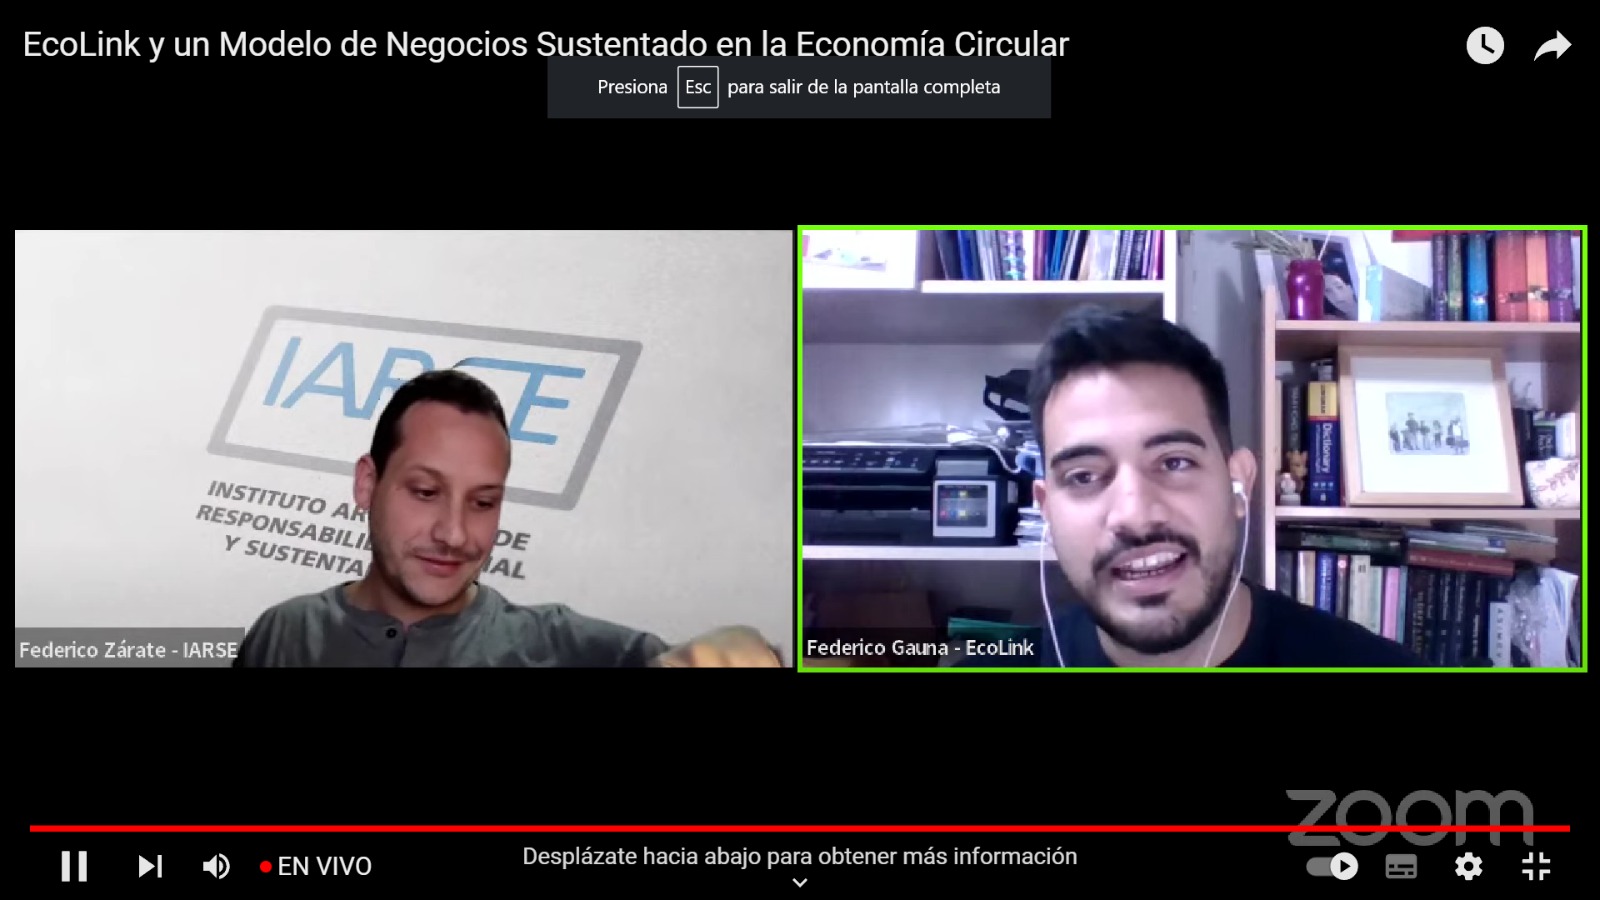 Video EcoLink y un modelo de negocios sustentado en la economia circular - Blog - EcoLink